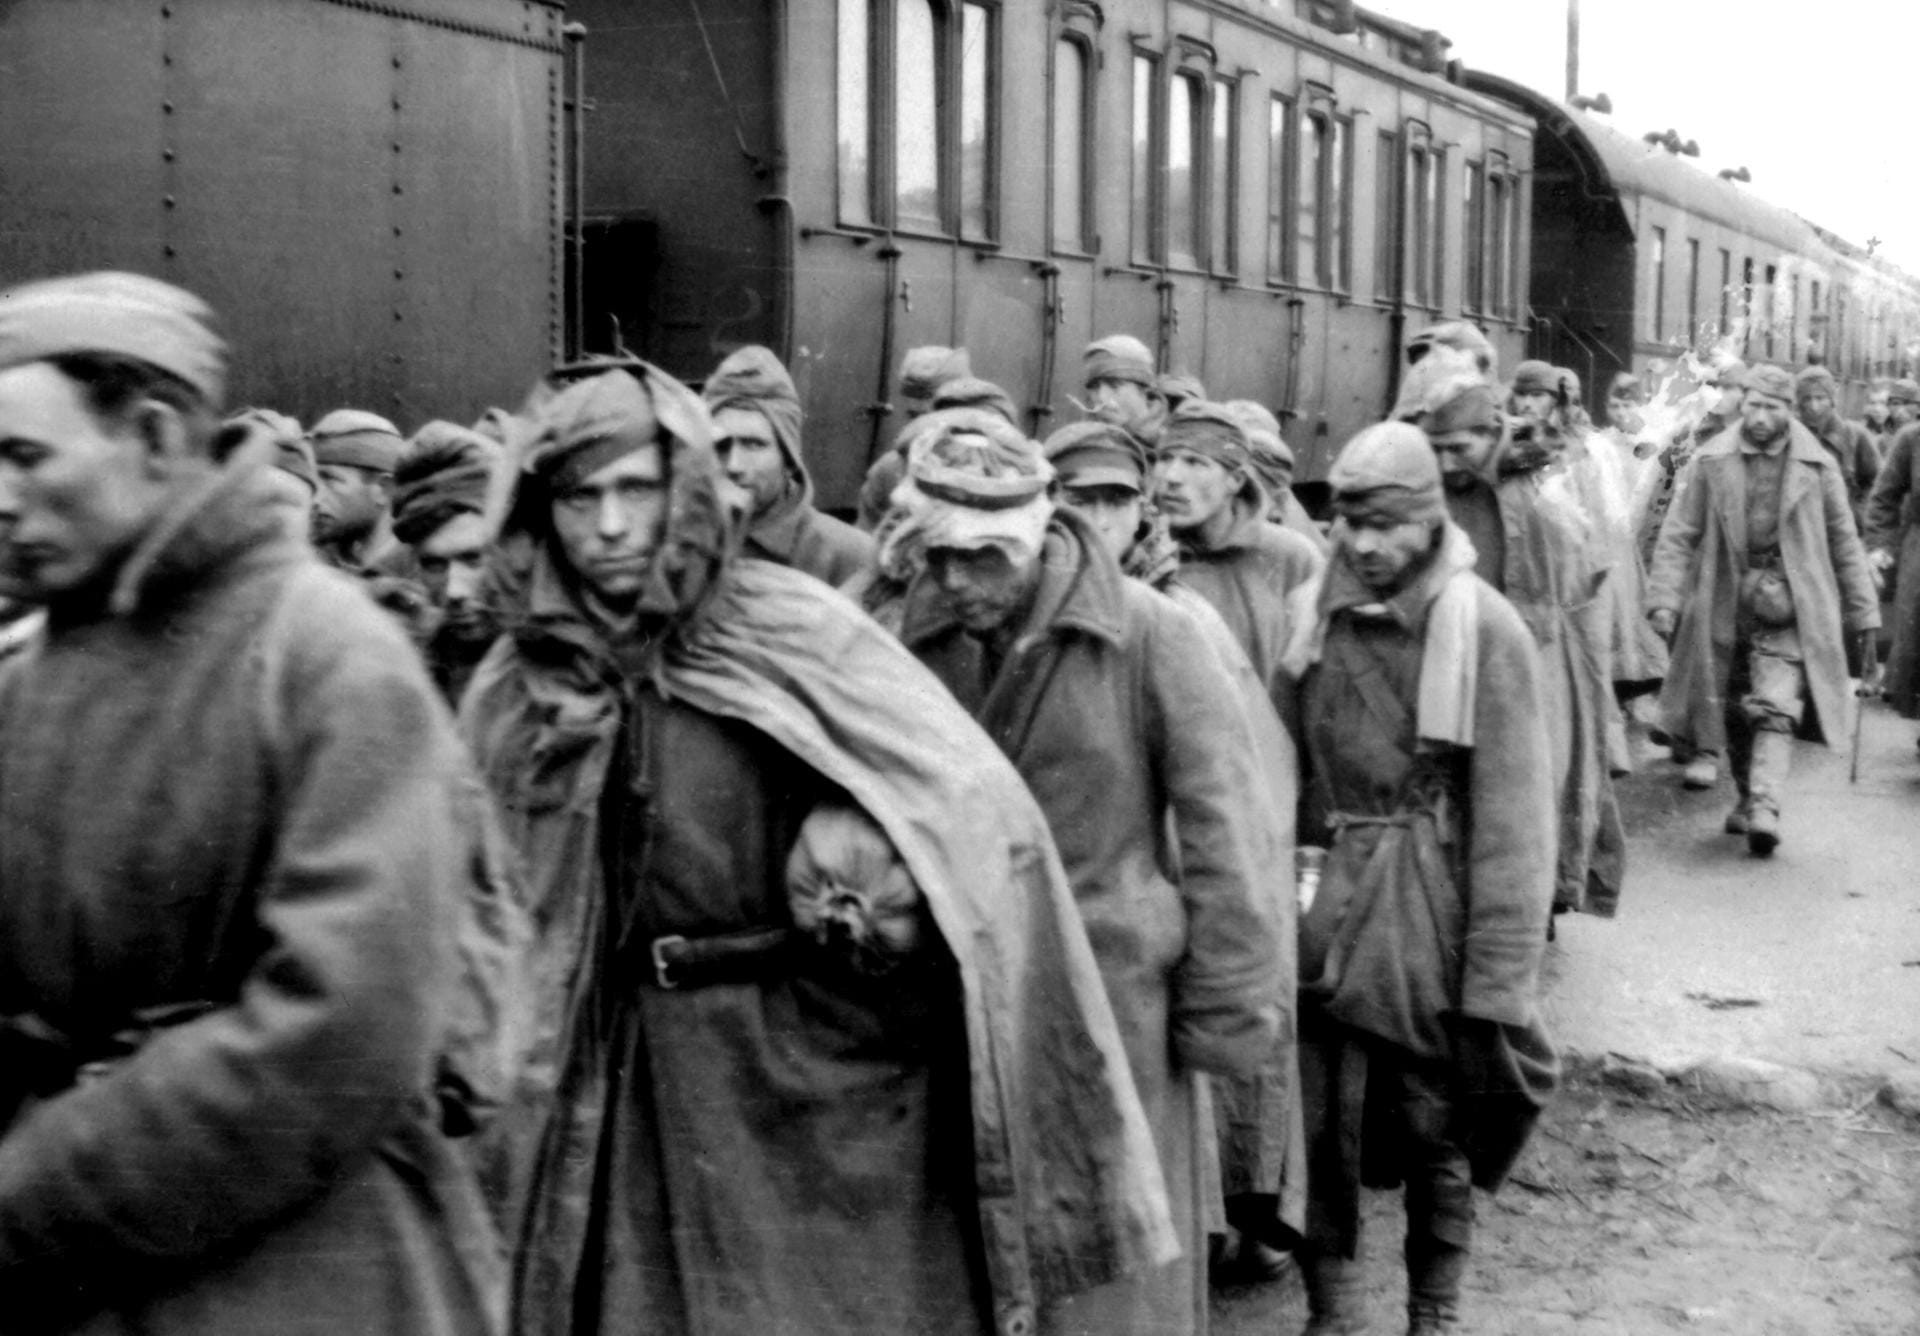 Russland: Das vom Hamburger Institut für Sozialforschung veröffentlichte Foto aus den Jahren 1941/1942 zeigt russische Kriegsgefangene während eines Transportes im Gebiet von Smolensk.